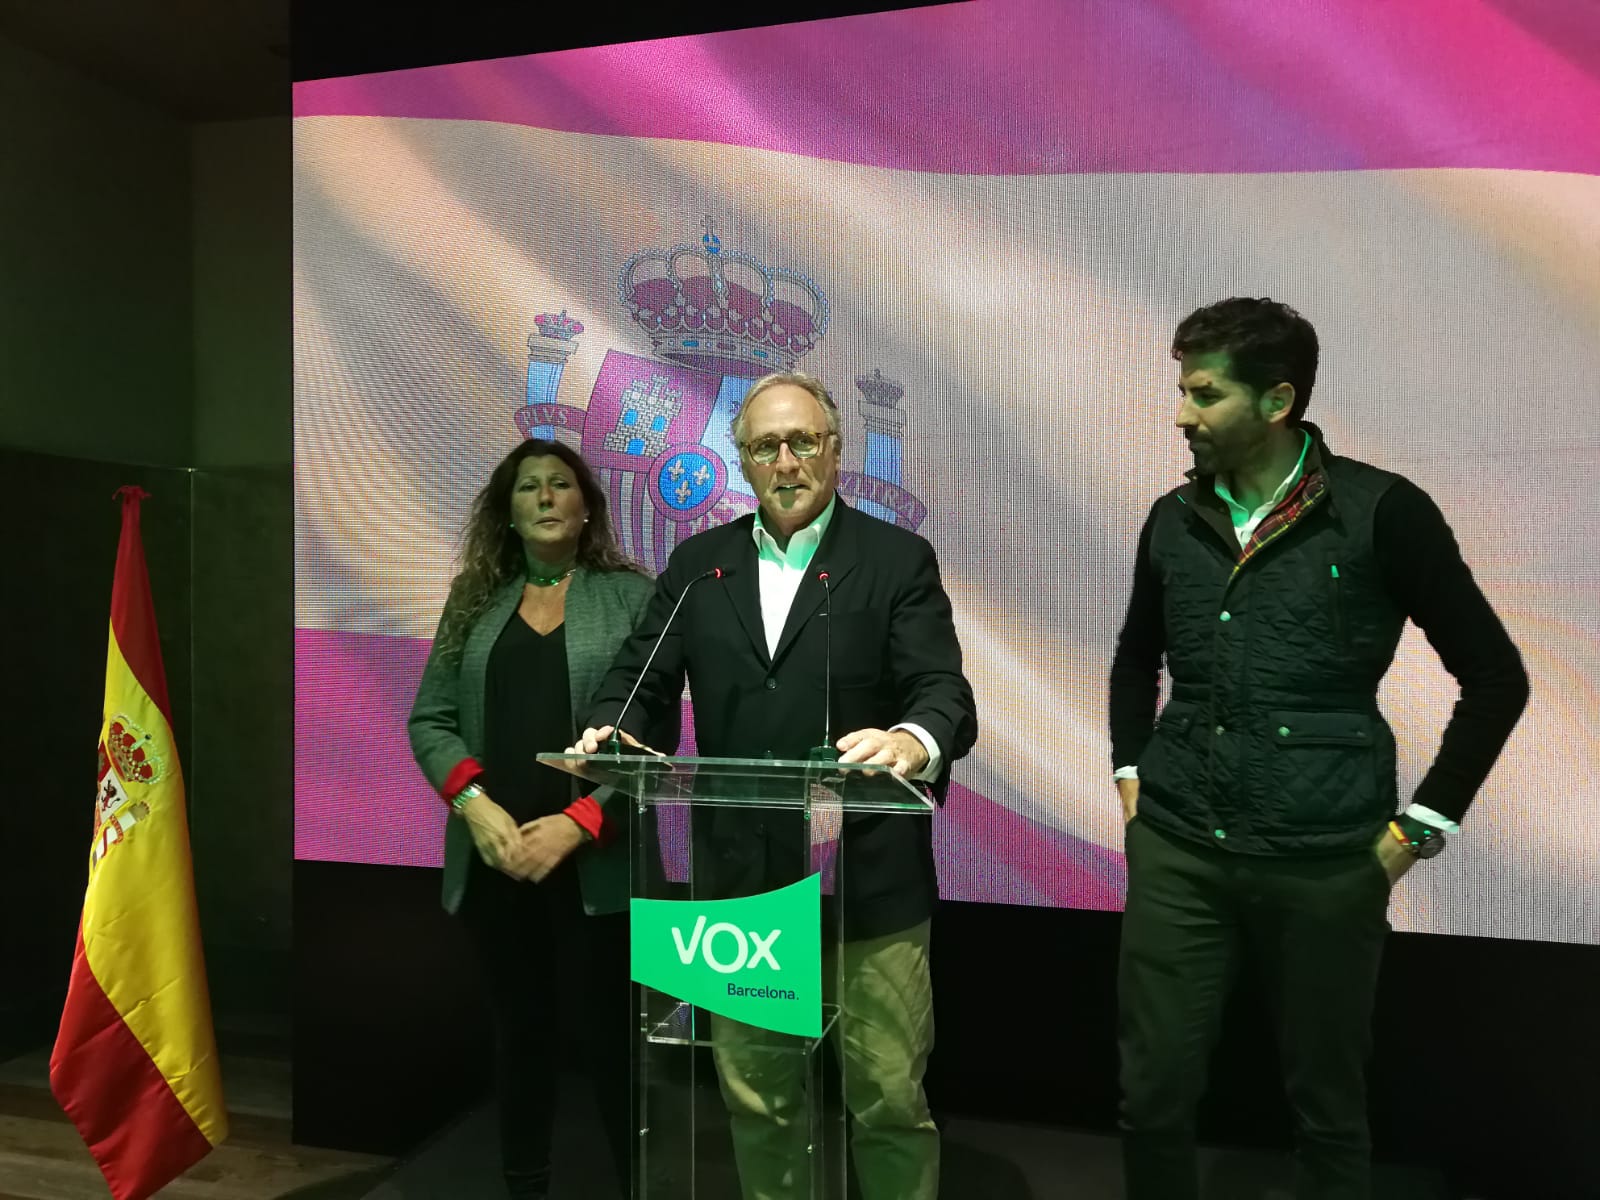 Qui és segon diputat de Vox a Catalunya?